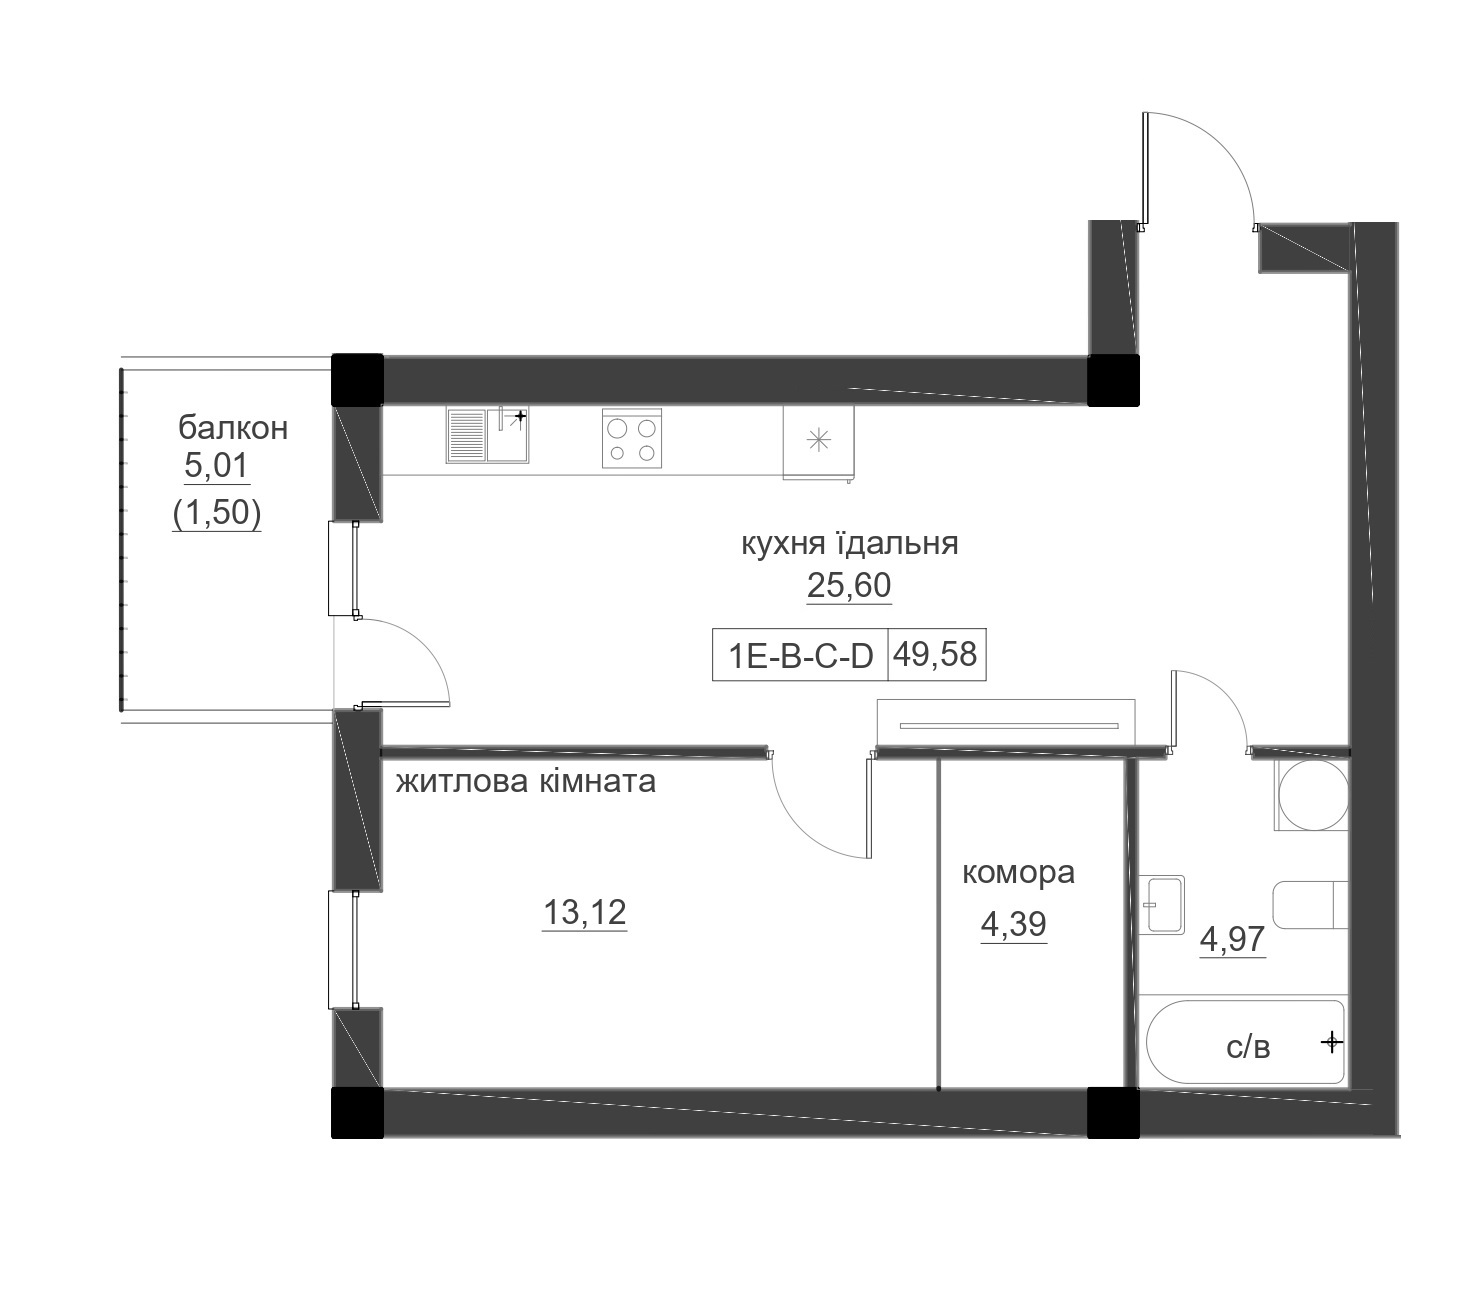 Планировка 1-к квартира площей 49.58м2, LR-005-07/0005.